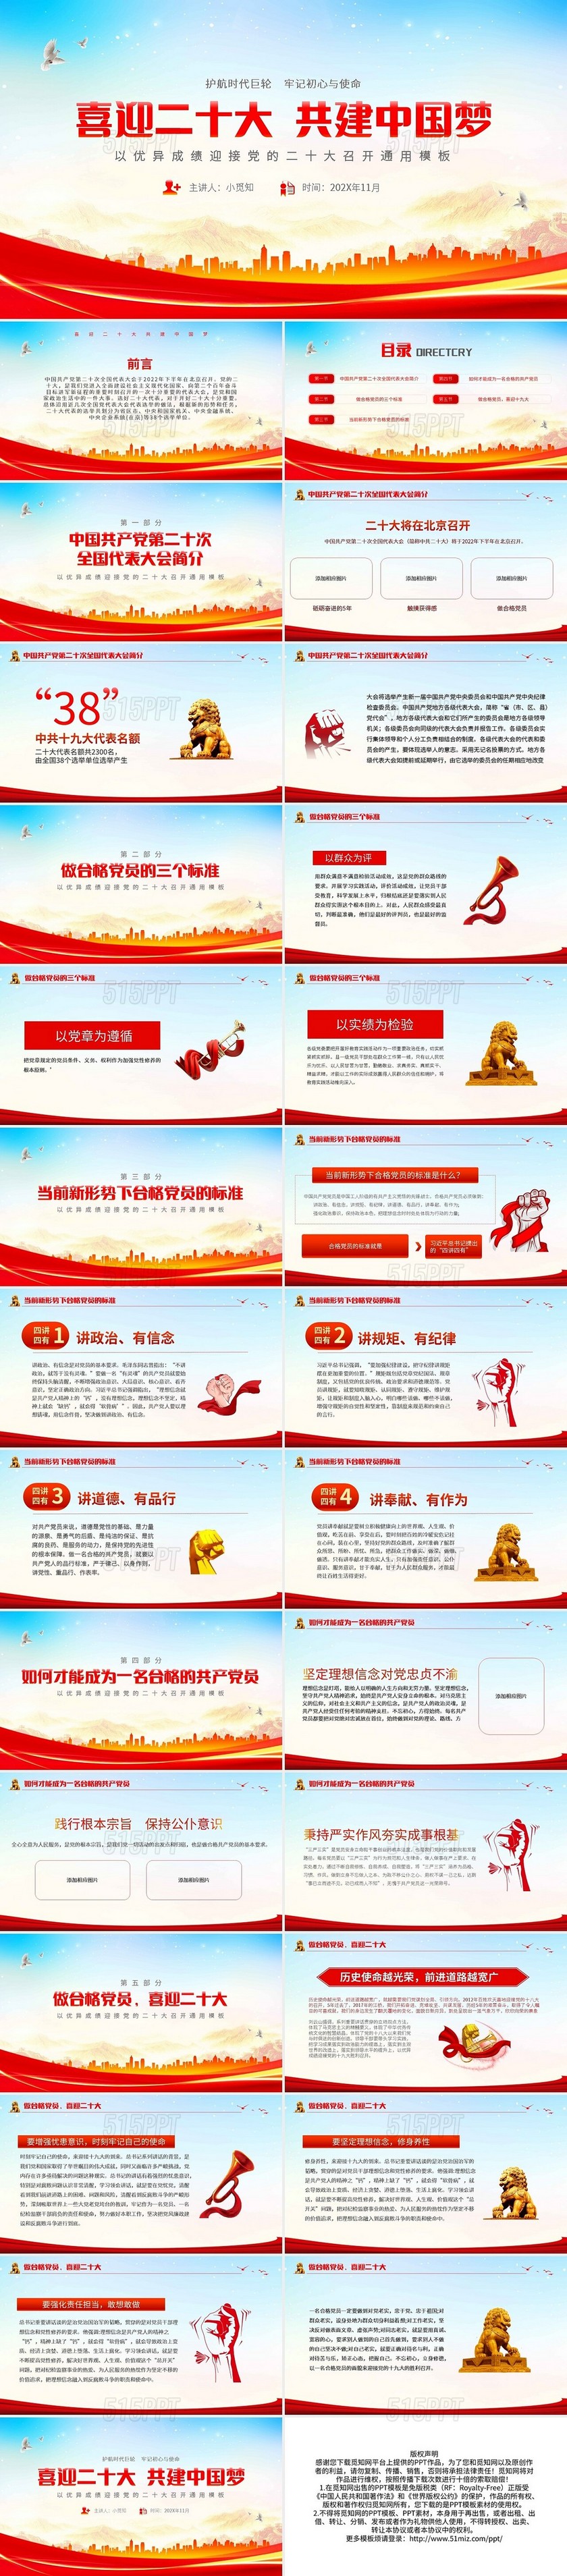 红色简约喜迎二十大共建中国梦PPT模板宣传PPT动态PPT